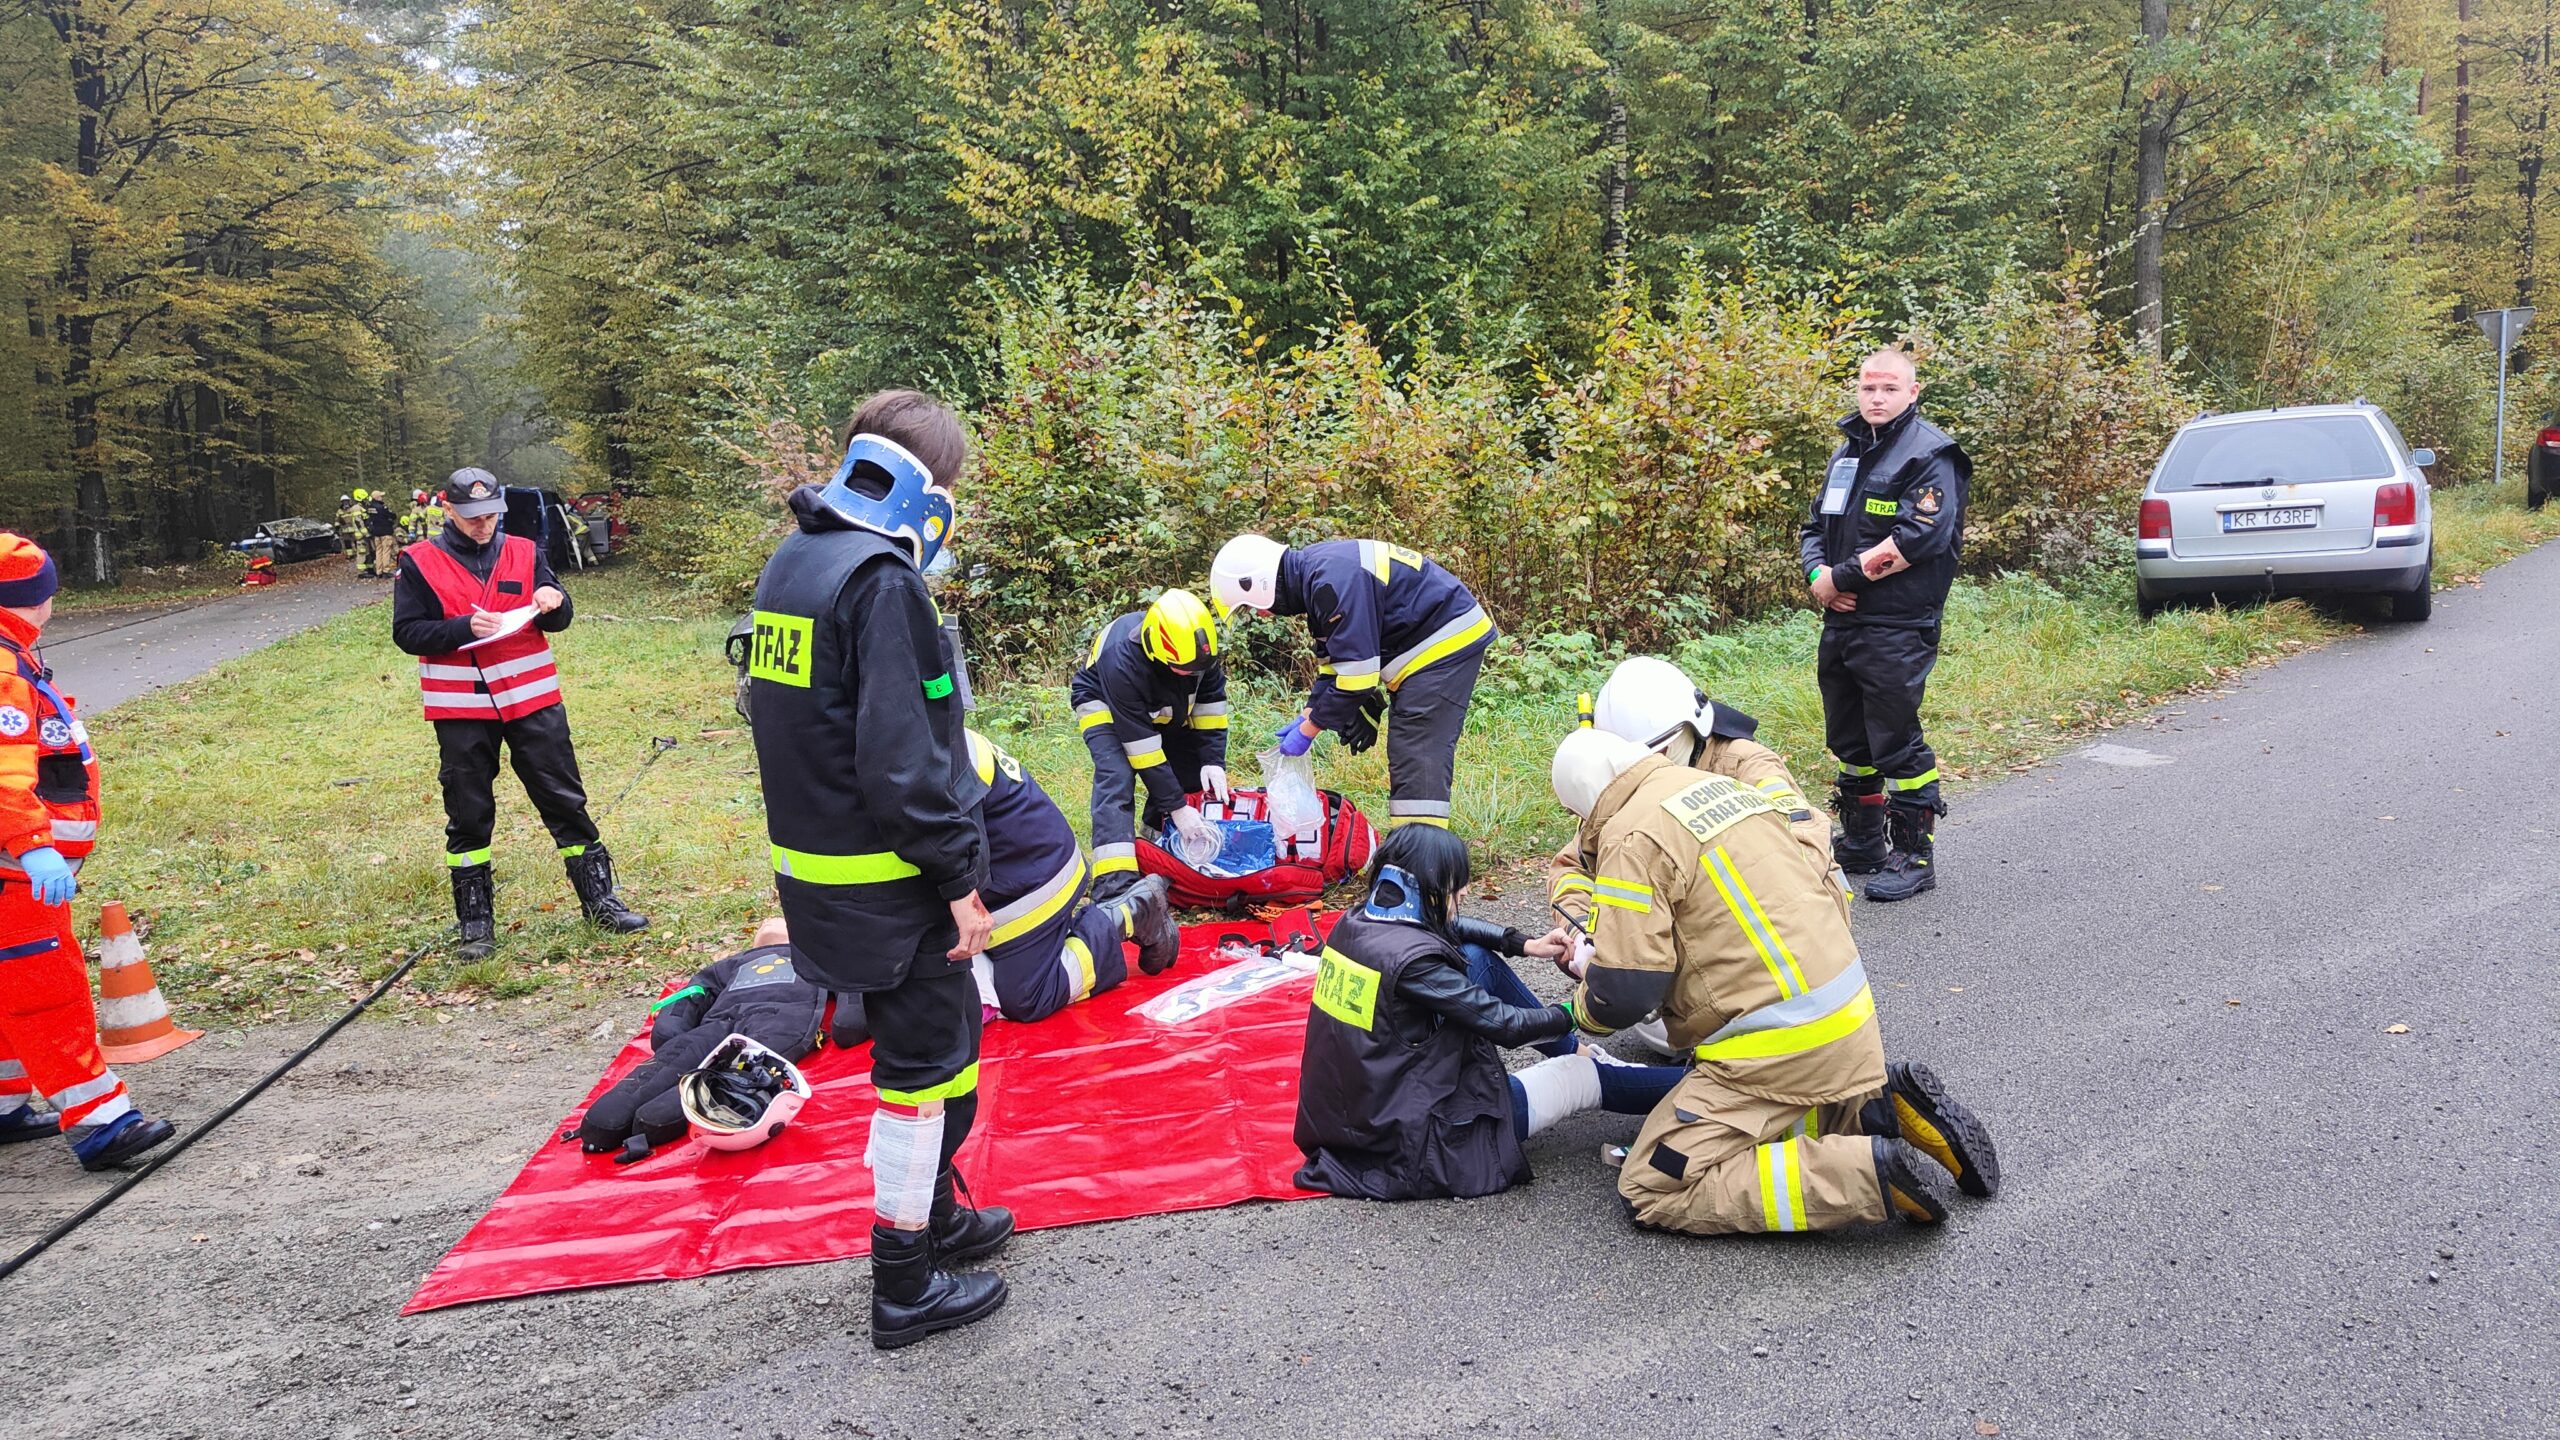 Strażacy ćwiczą udzielanie pierwszej pomocy przedmedycznej. Na ziemi leży czerwona mata na której znajdują się poszkodowani.